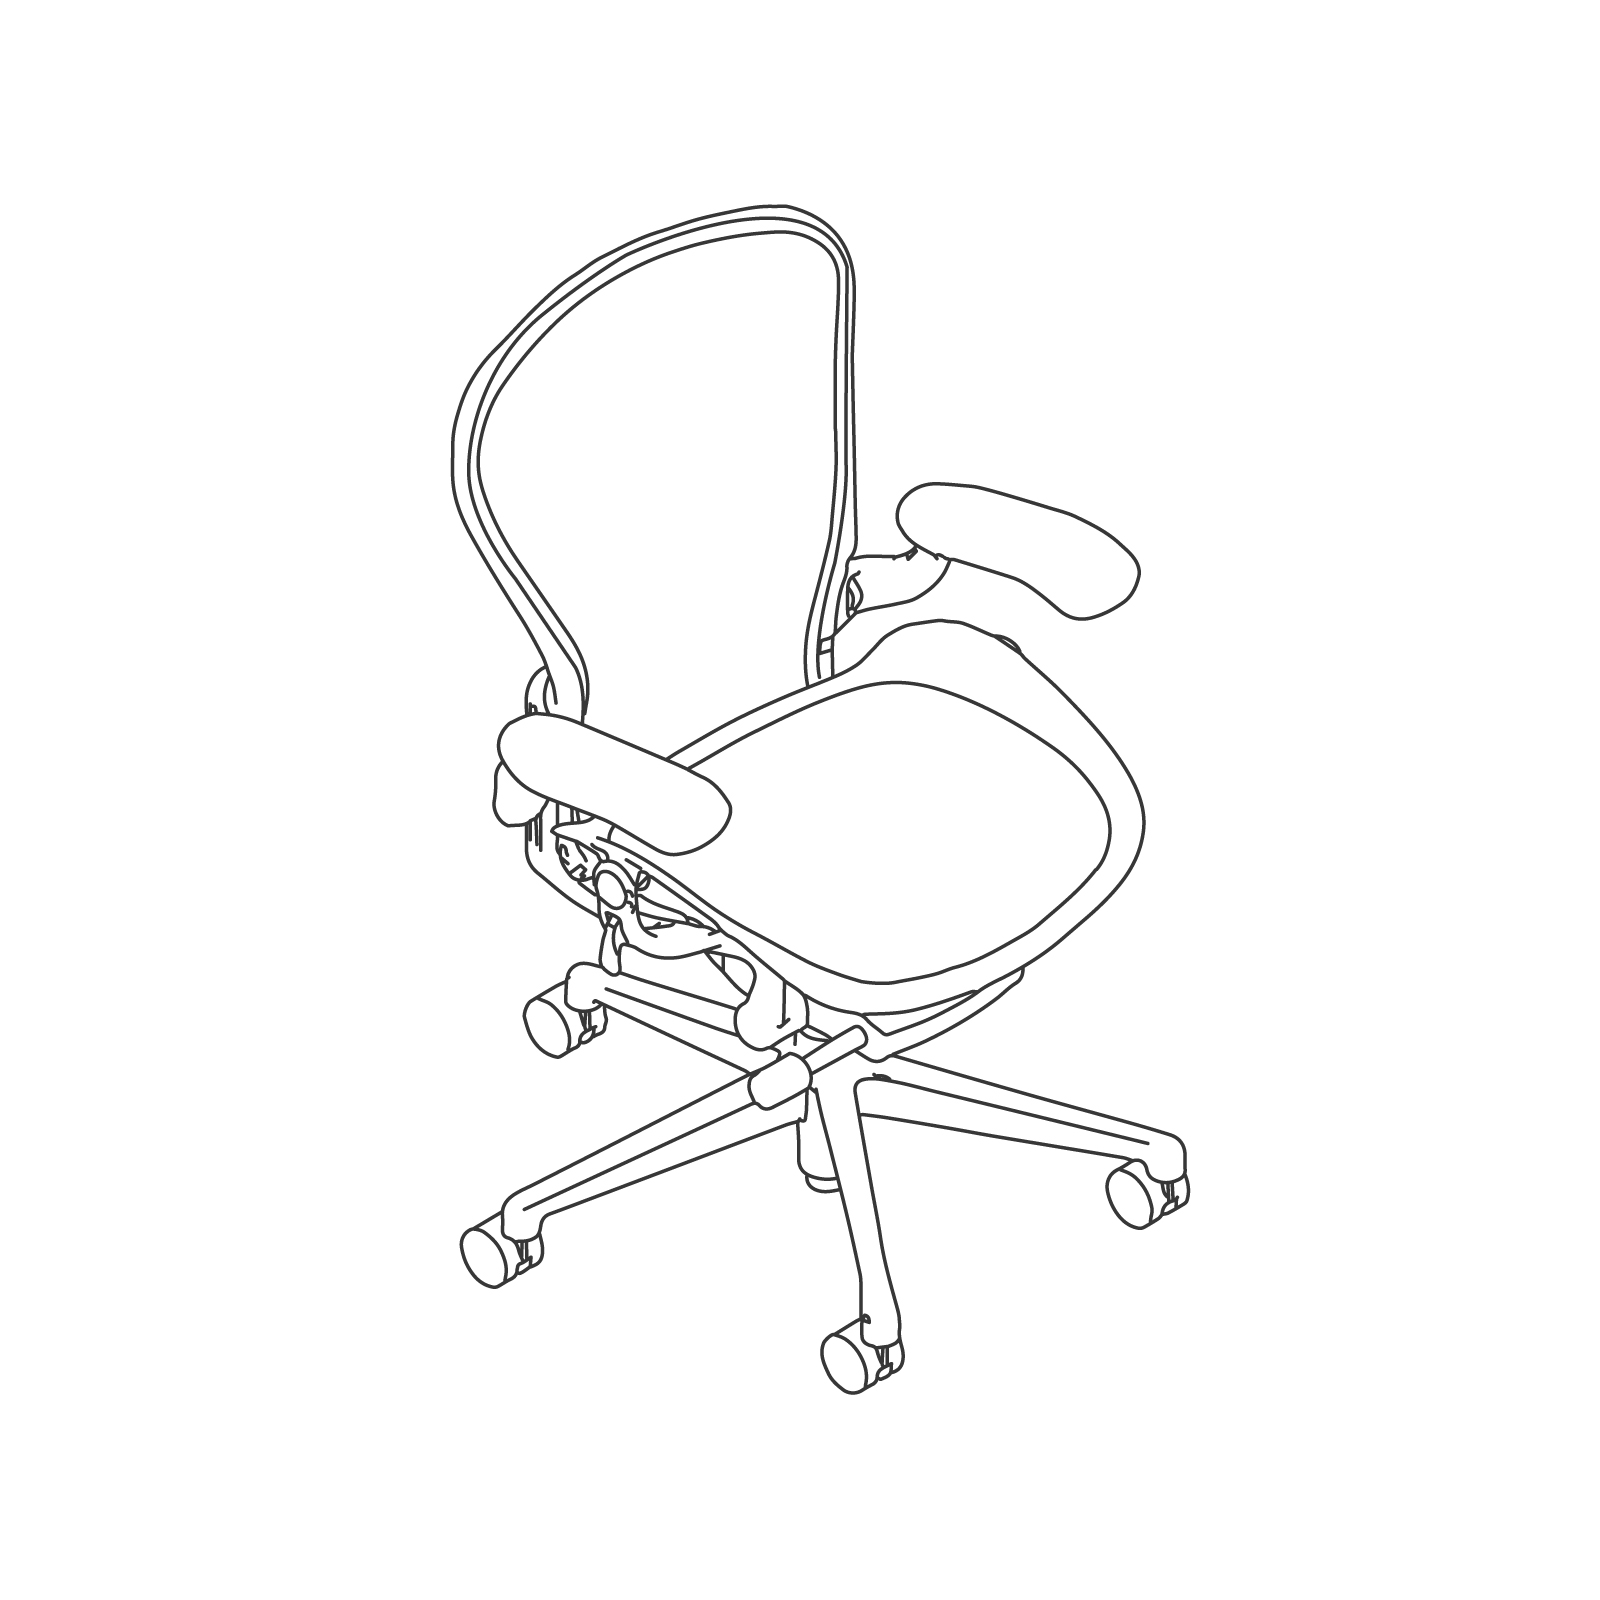 线描图 - Aeron座椅–C款–完全可调式扶手